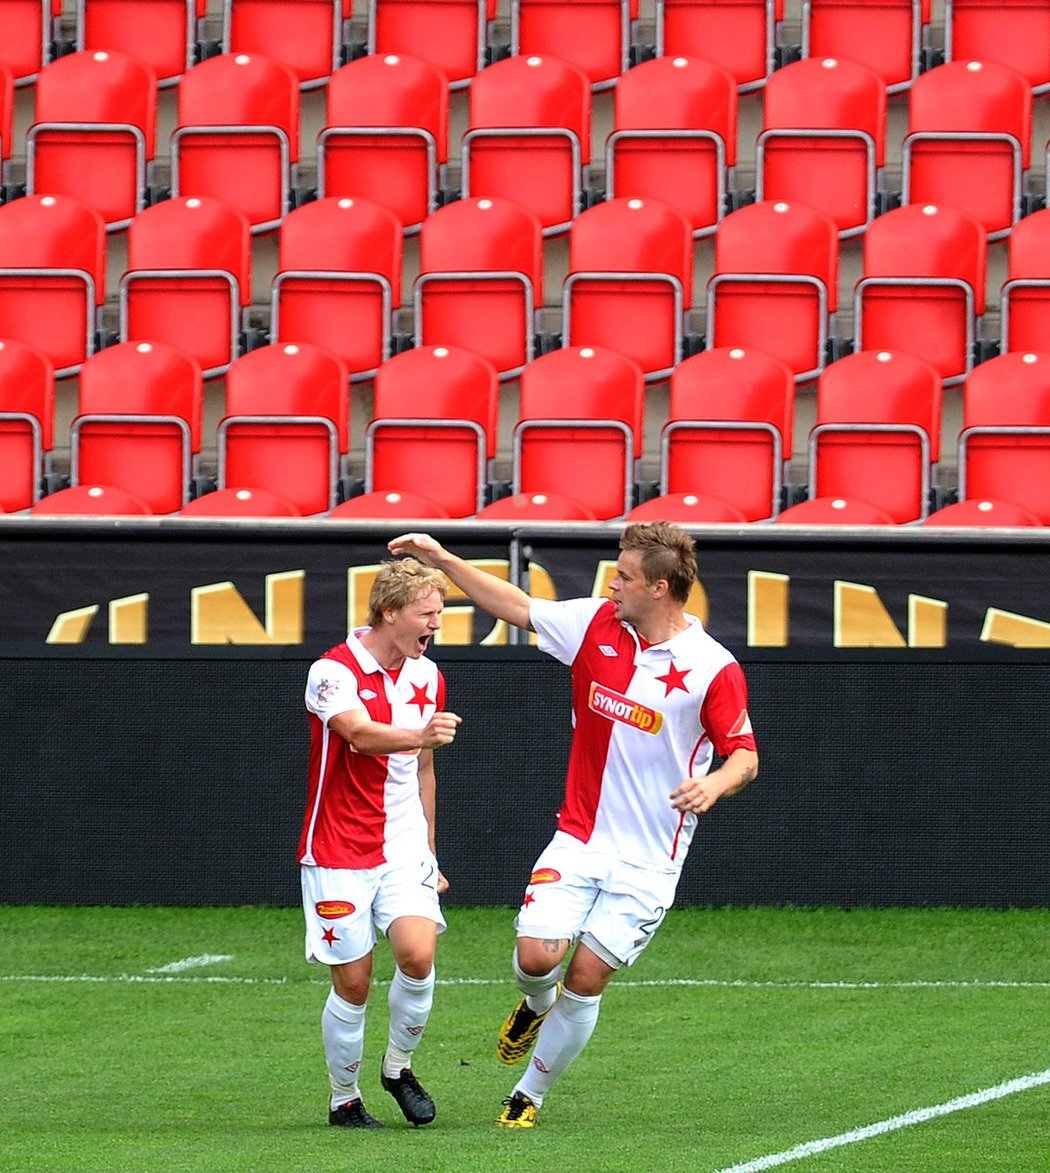 Štěpán Koreš (vlevo) a Zbyněk Pospěch se radují z gólu proti Bohemians před prázdnými tribunami v Edenu